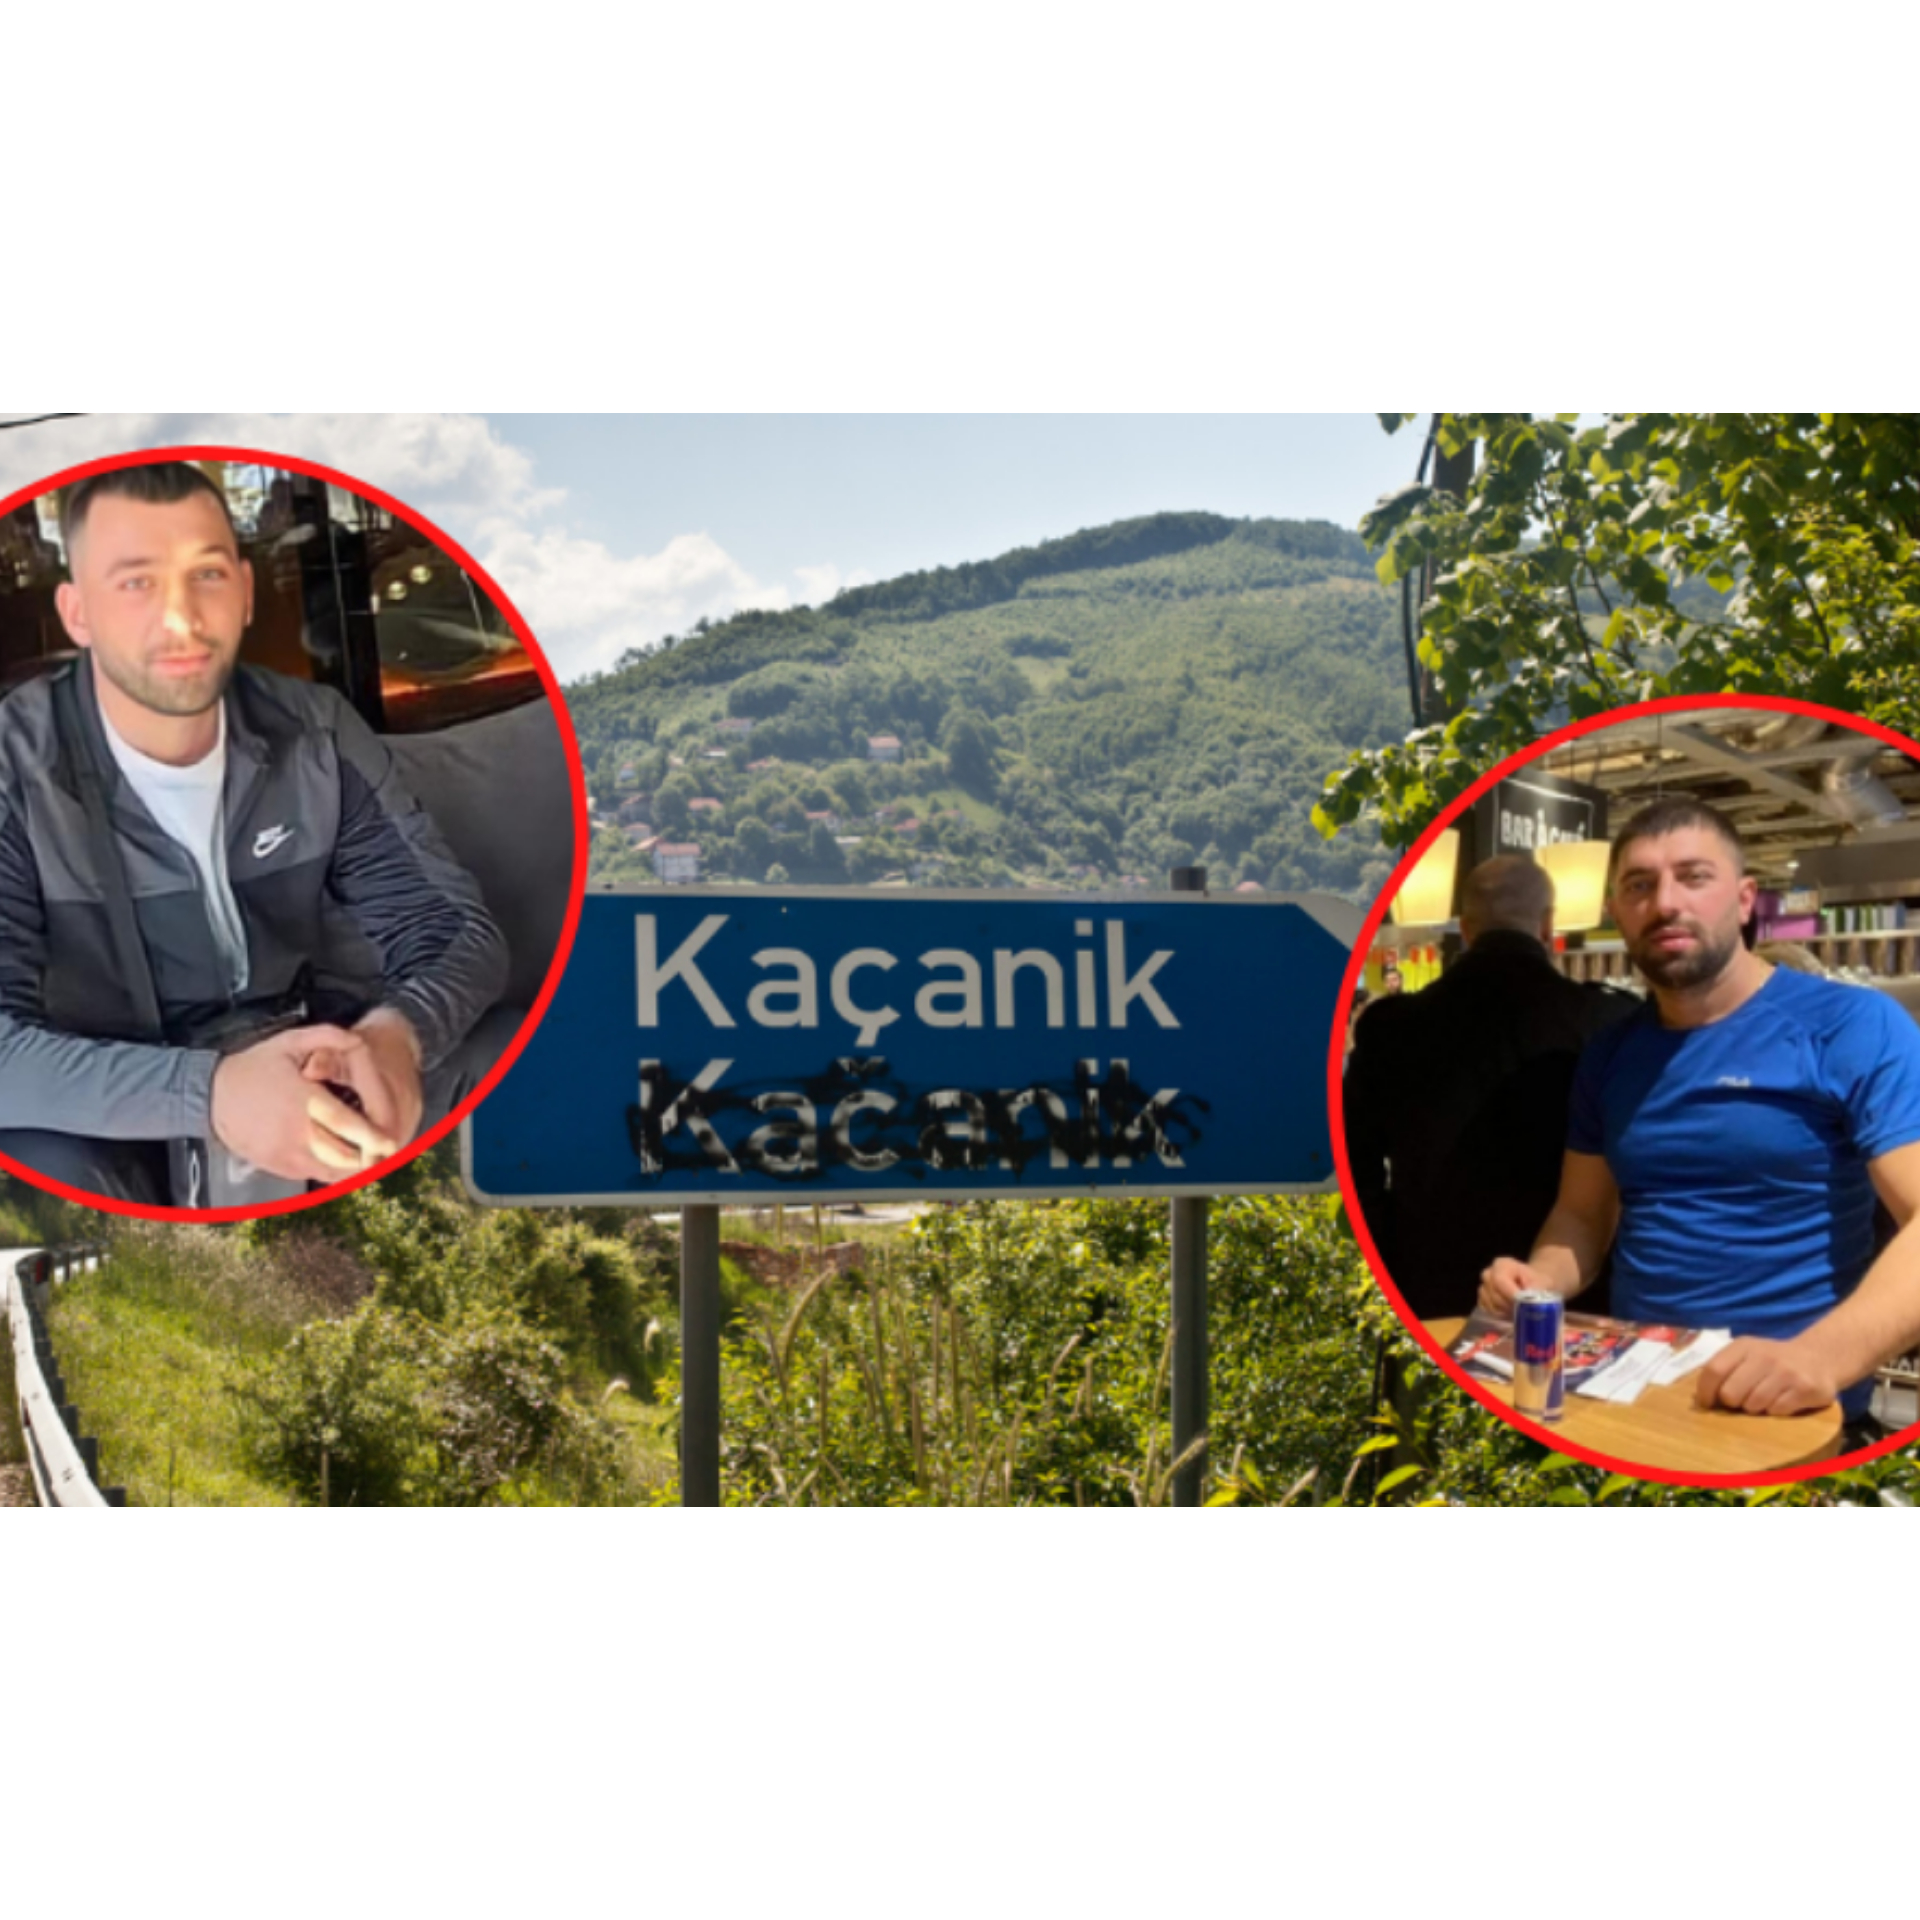 Vëllai i viktimës në Kaçanik u plagos në faqe, pastaj plumbi i kaloi në këtë pjesë të rëndësishme